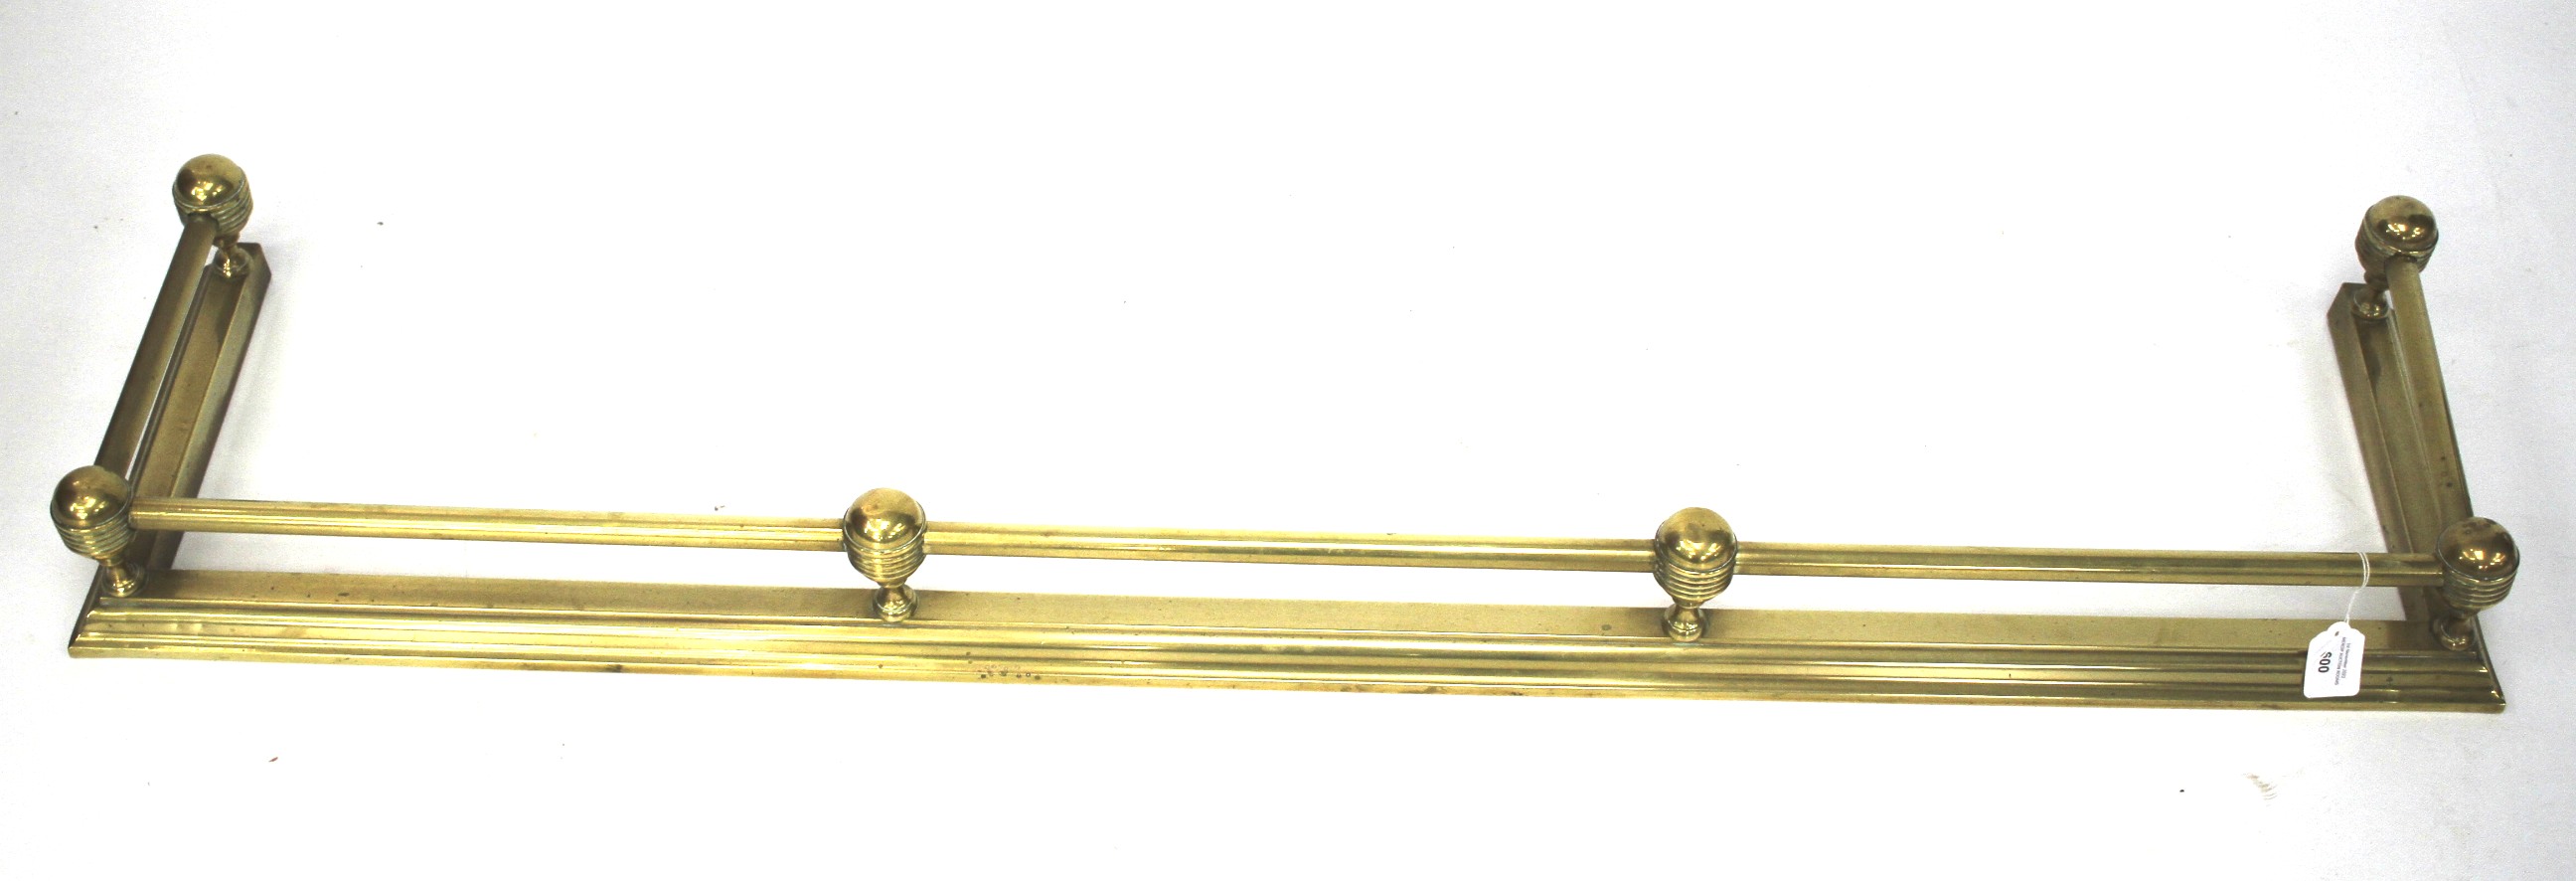 A 20th century brass fender.